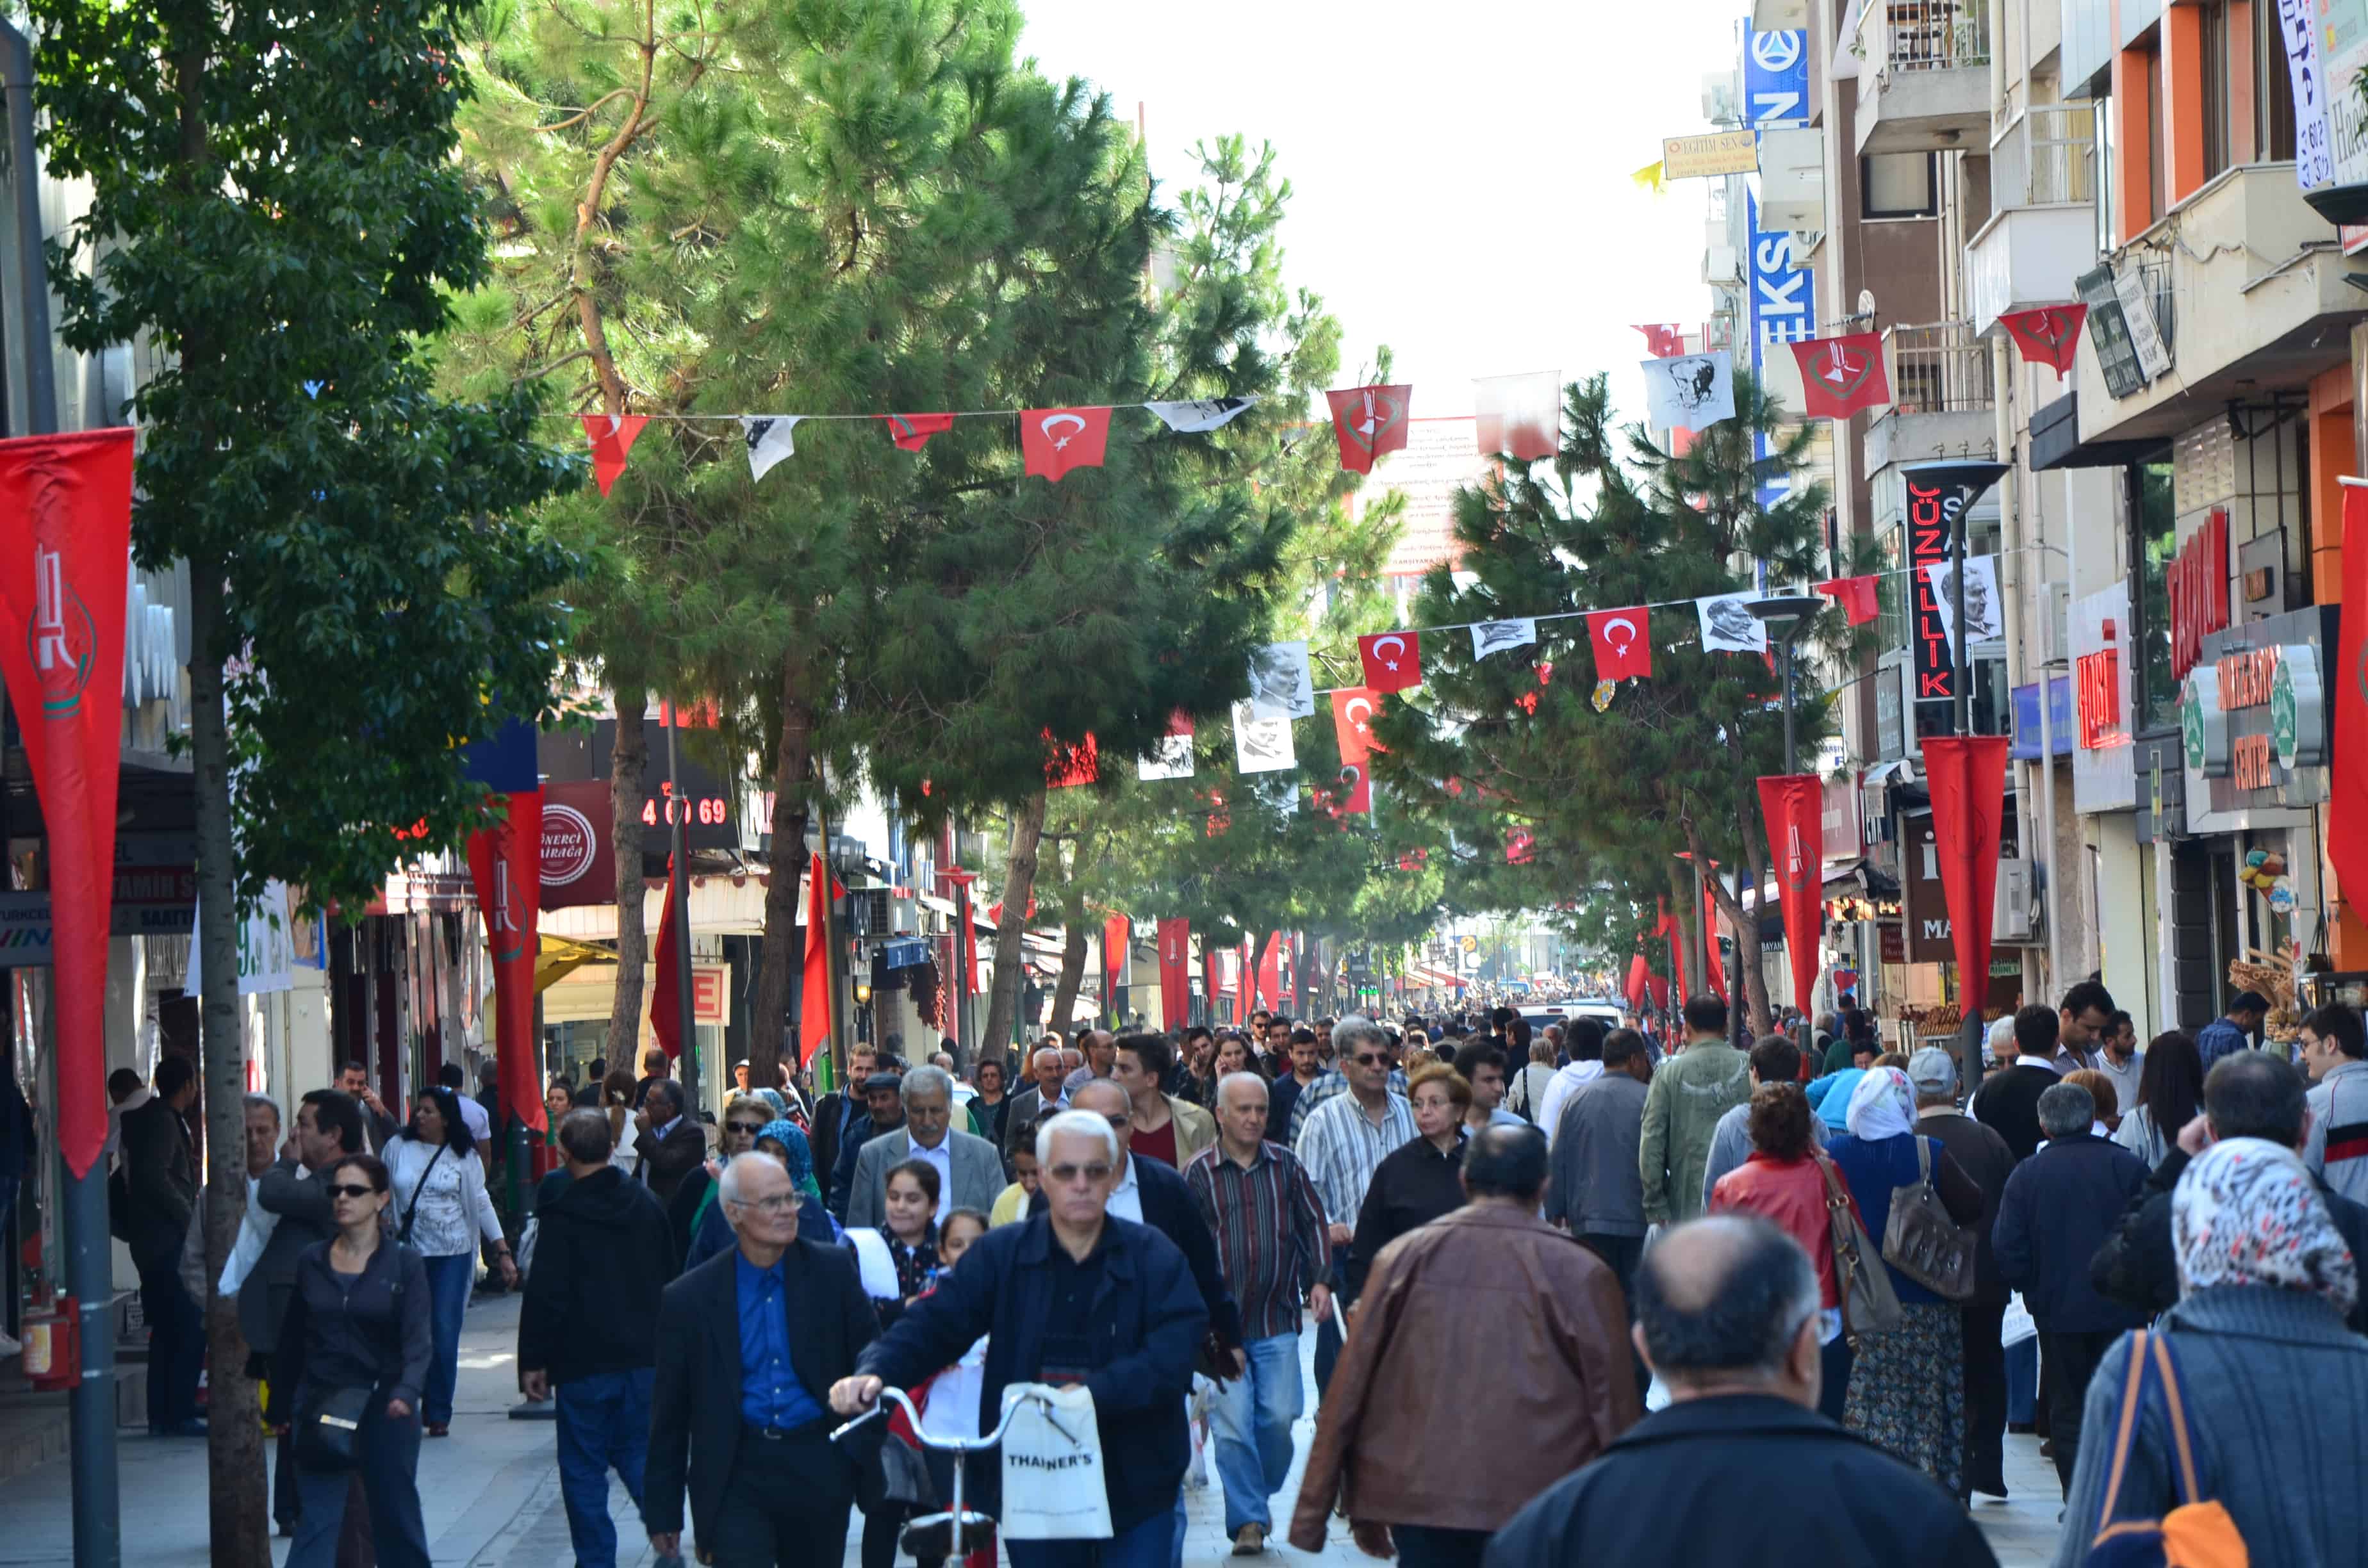 Kemal Pasha Street in Karşıyaka, Izmir, Turkey